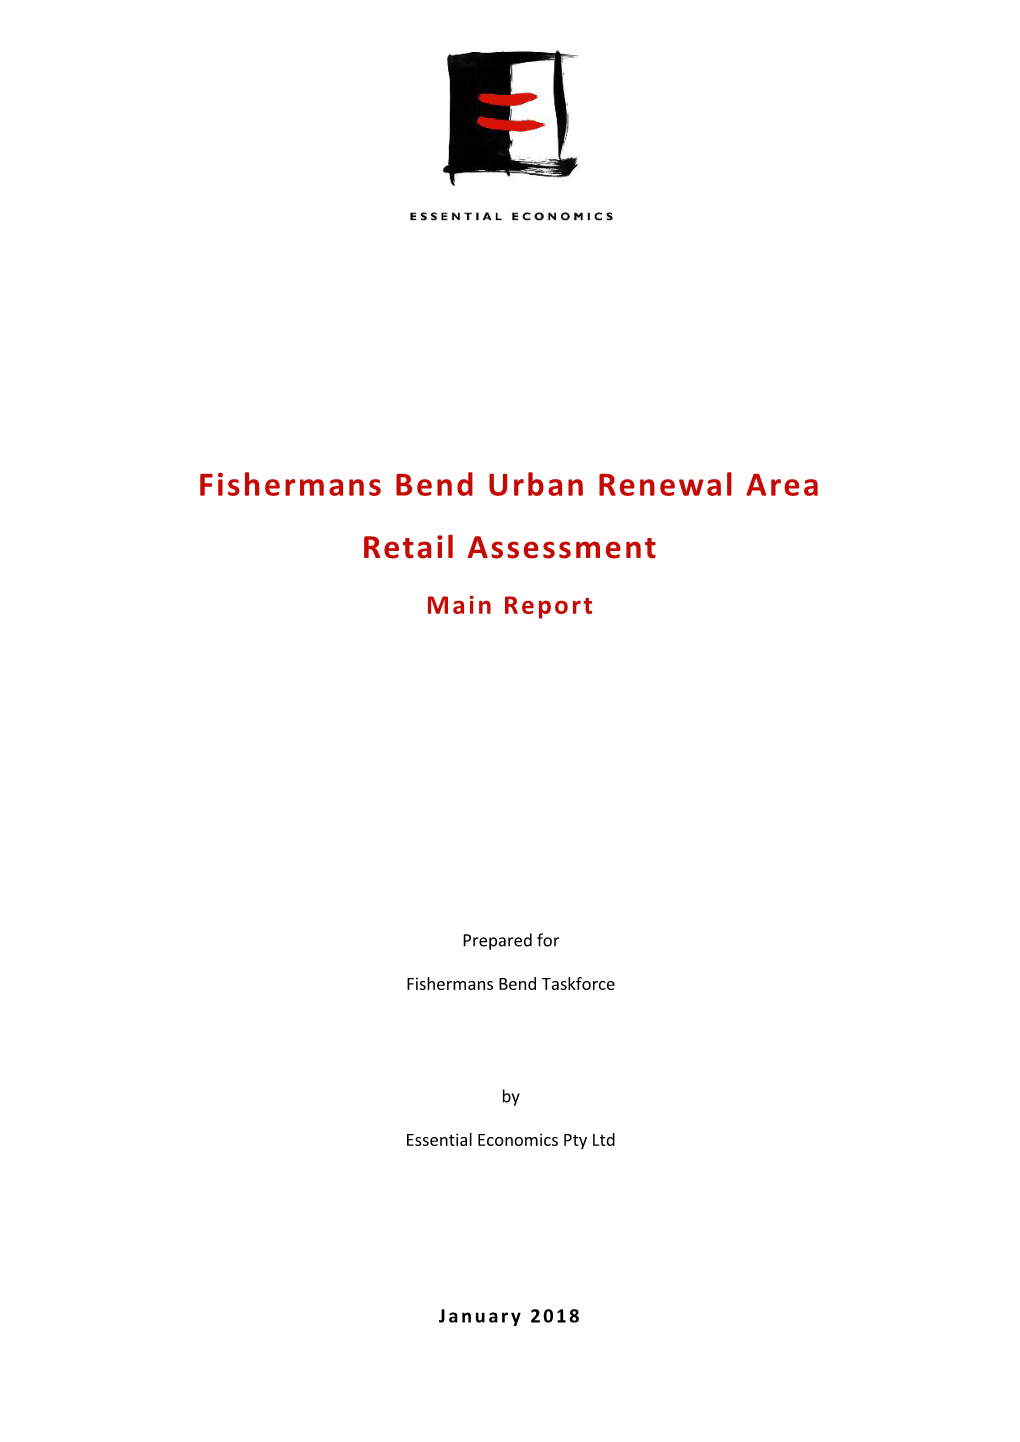 Fishermans Bend Urban Renewal Area Retail Assessment Main Report